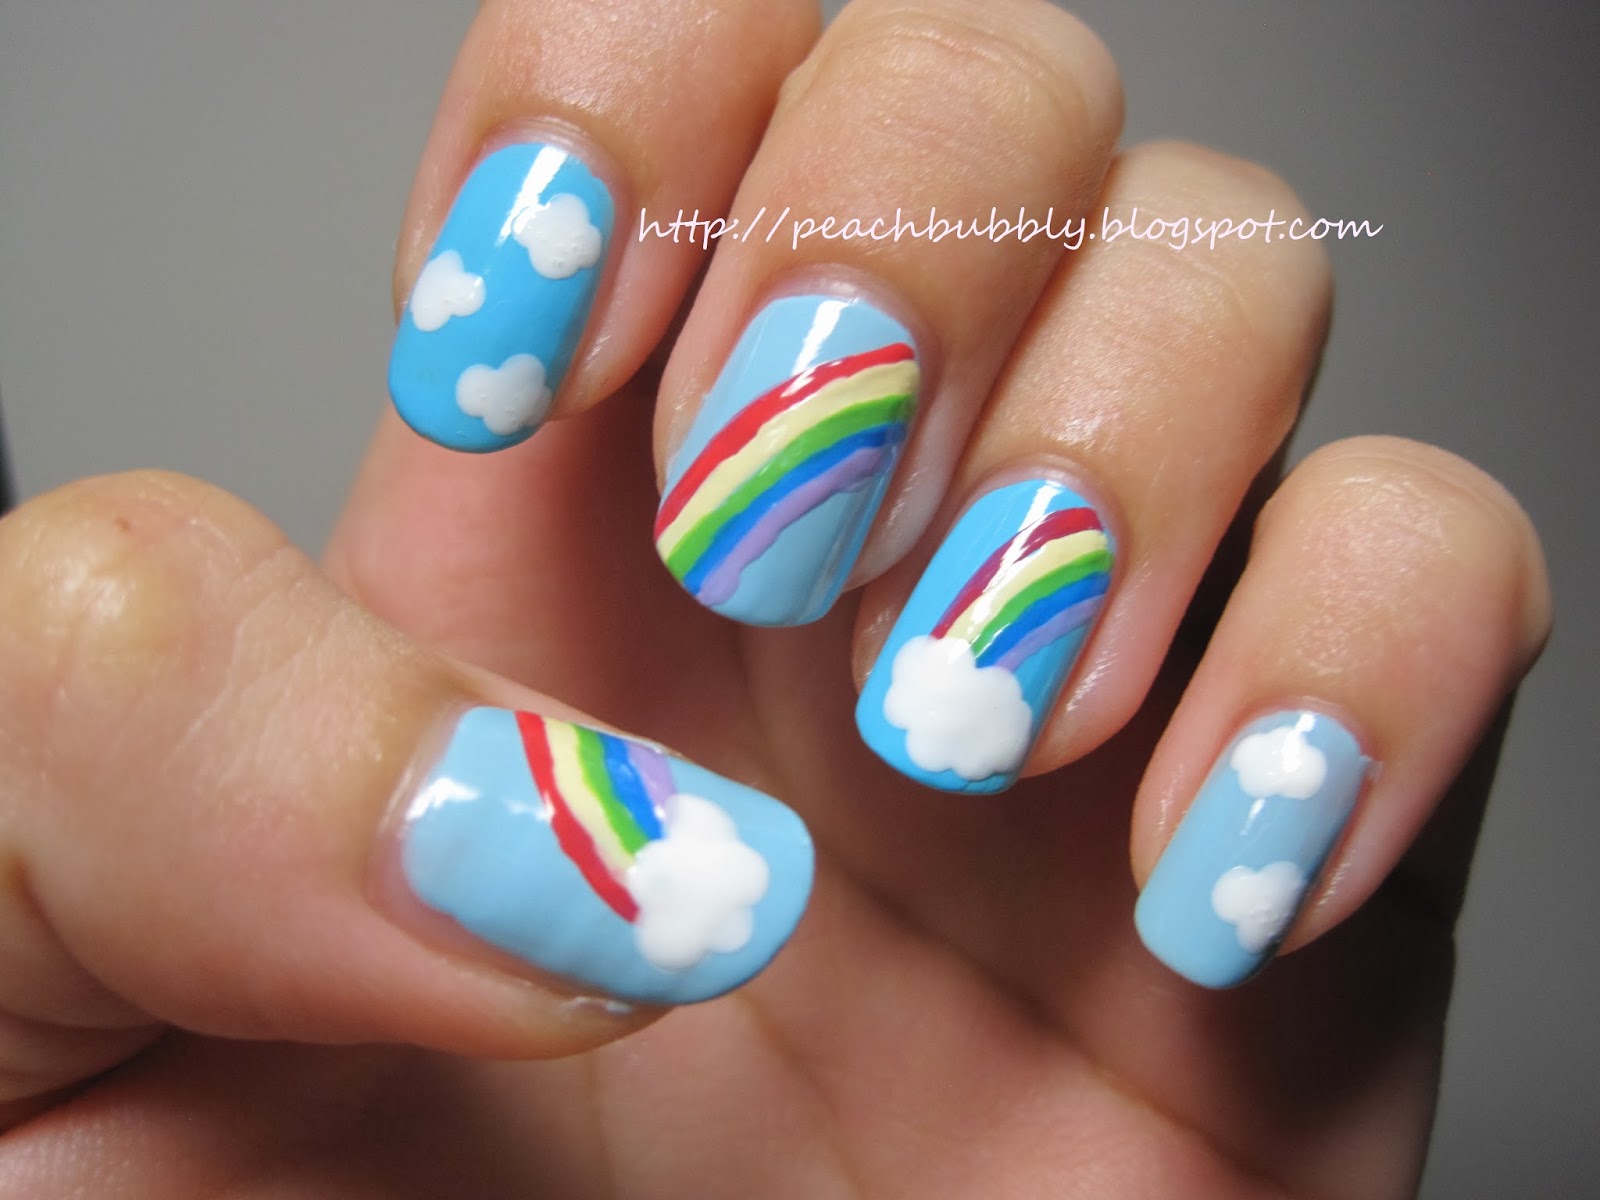 peachbubbly: Rainbow cloud nails!